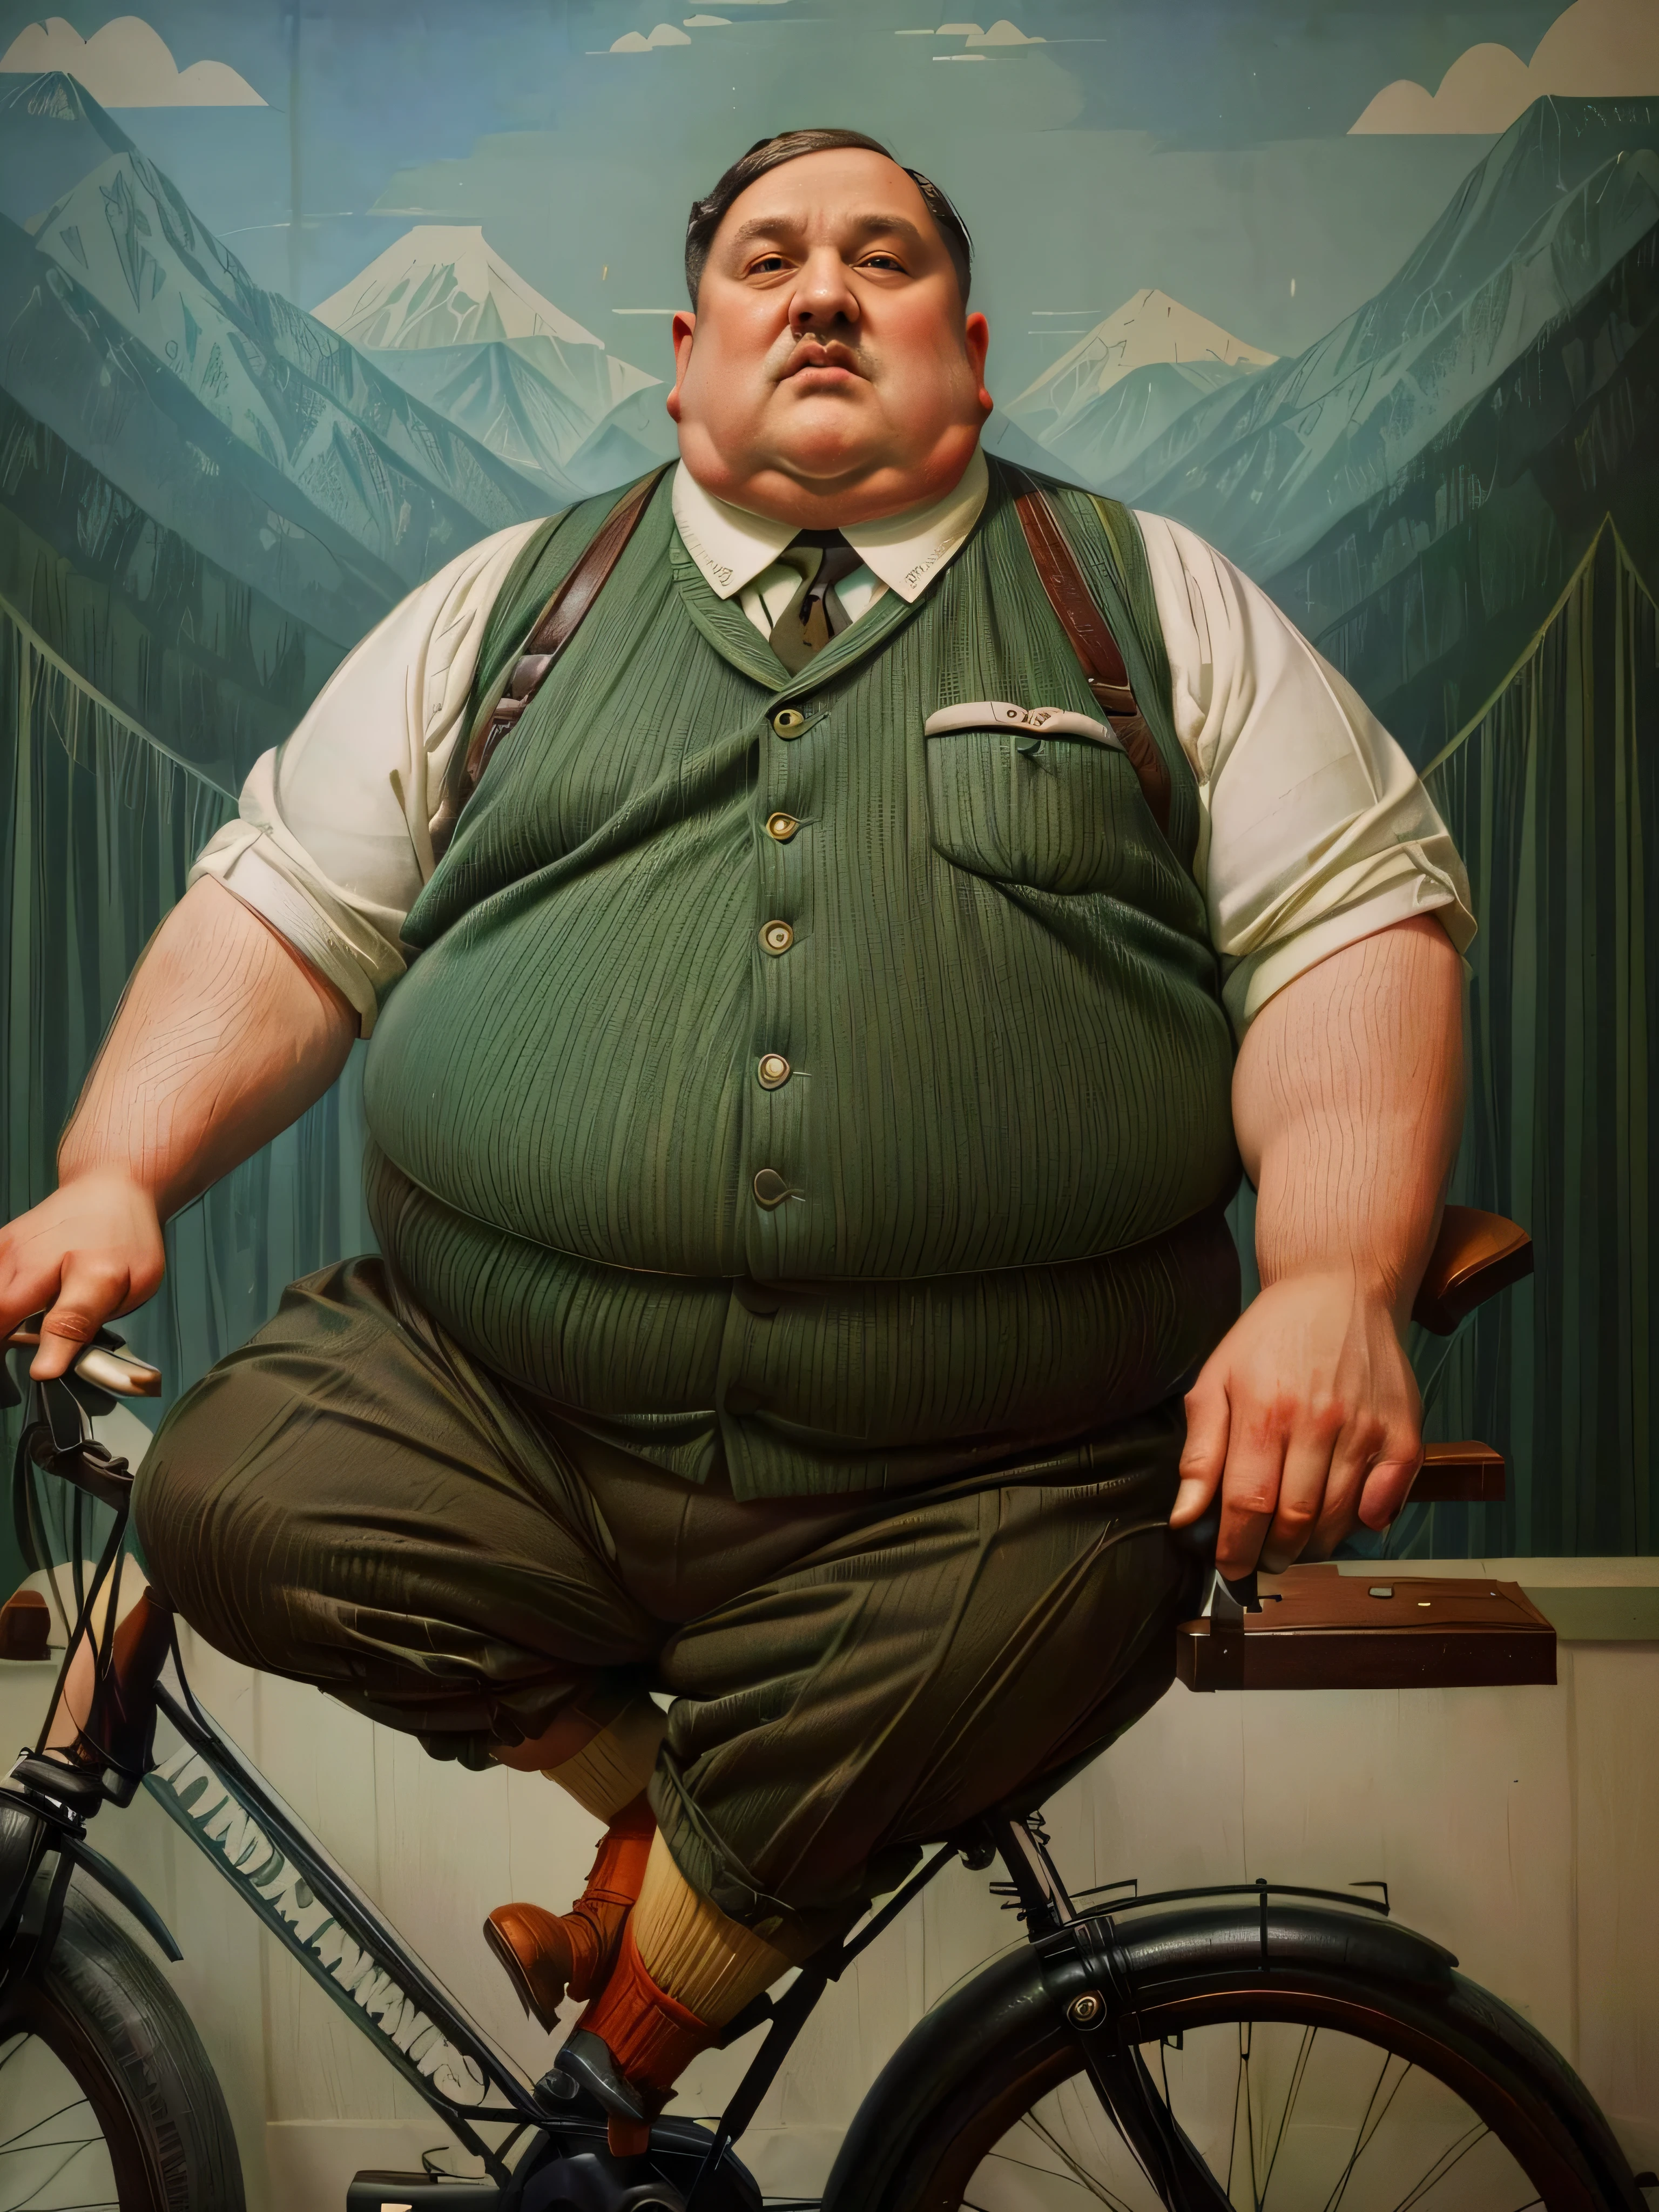 1930, 馬薩諸塞州山村. 拉斐爾前派 ((((85歲)) 極度肥胖, 500磅重的阿道夫·希特勒), 骑自行车 ((((1930年代的休閒服裝)))) ((1930年代的髮型)), ((魏斯安德森電影風格)), 豐富多彩的. 